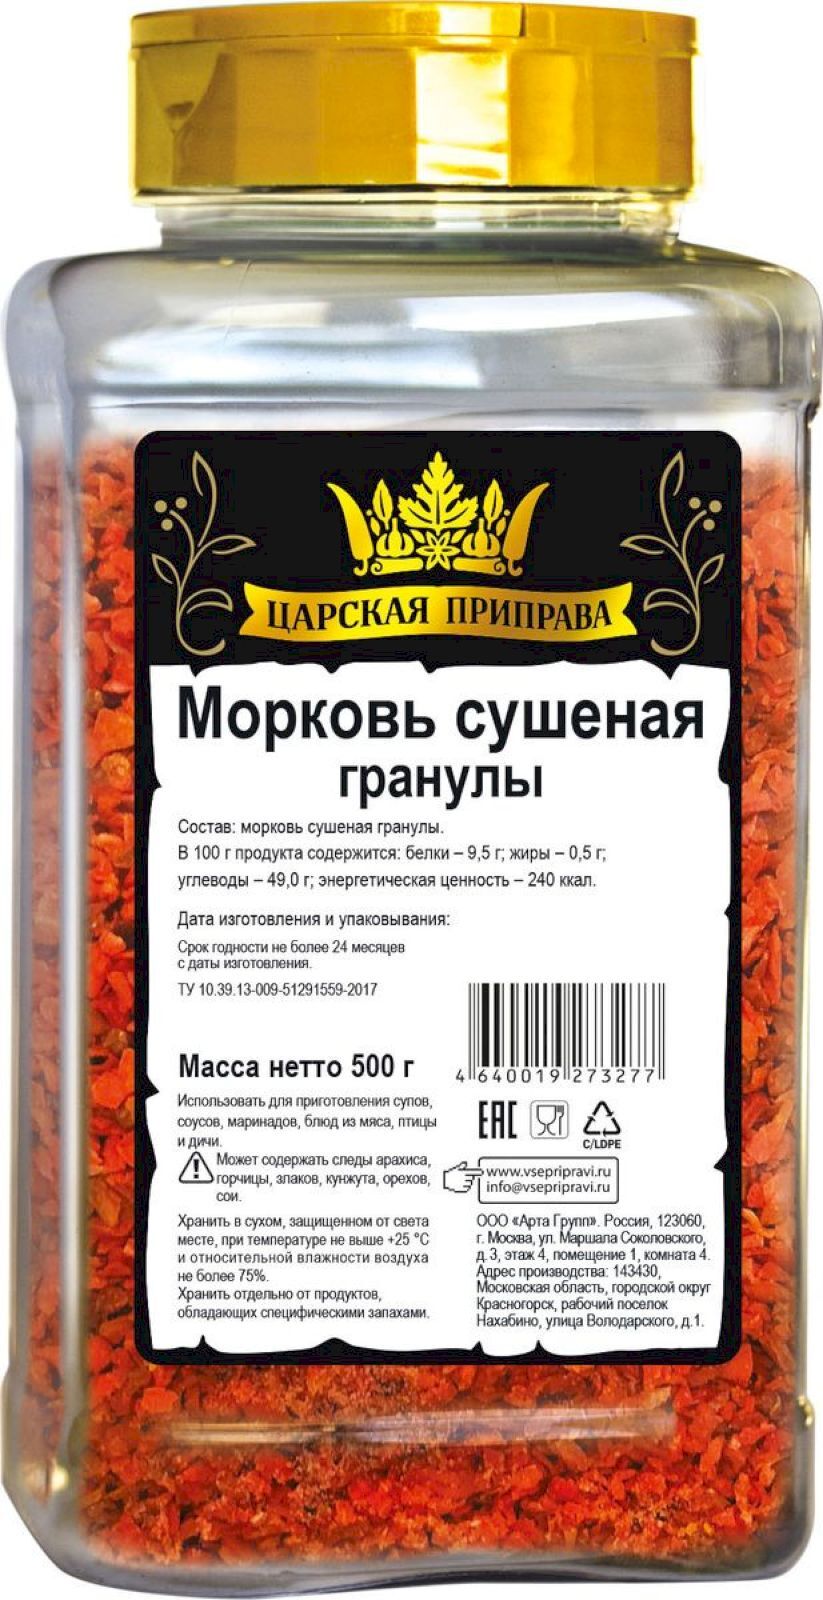 Морковь Царская приправа гранулы 500 г